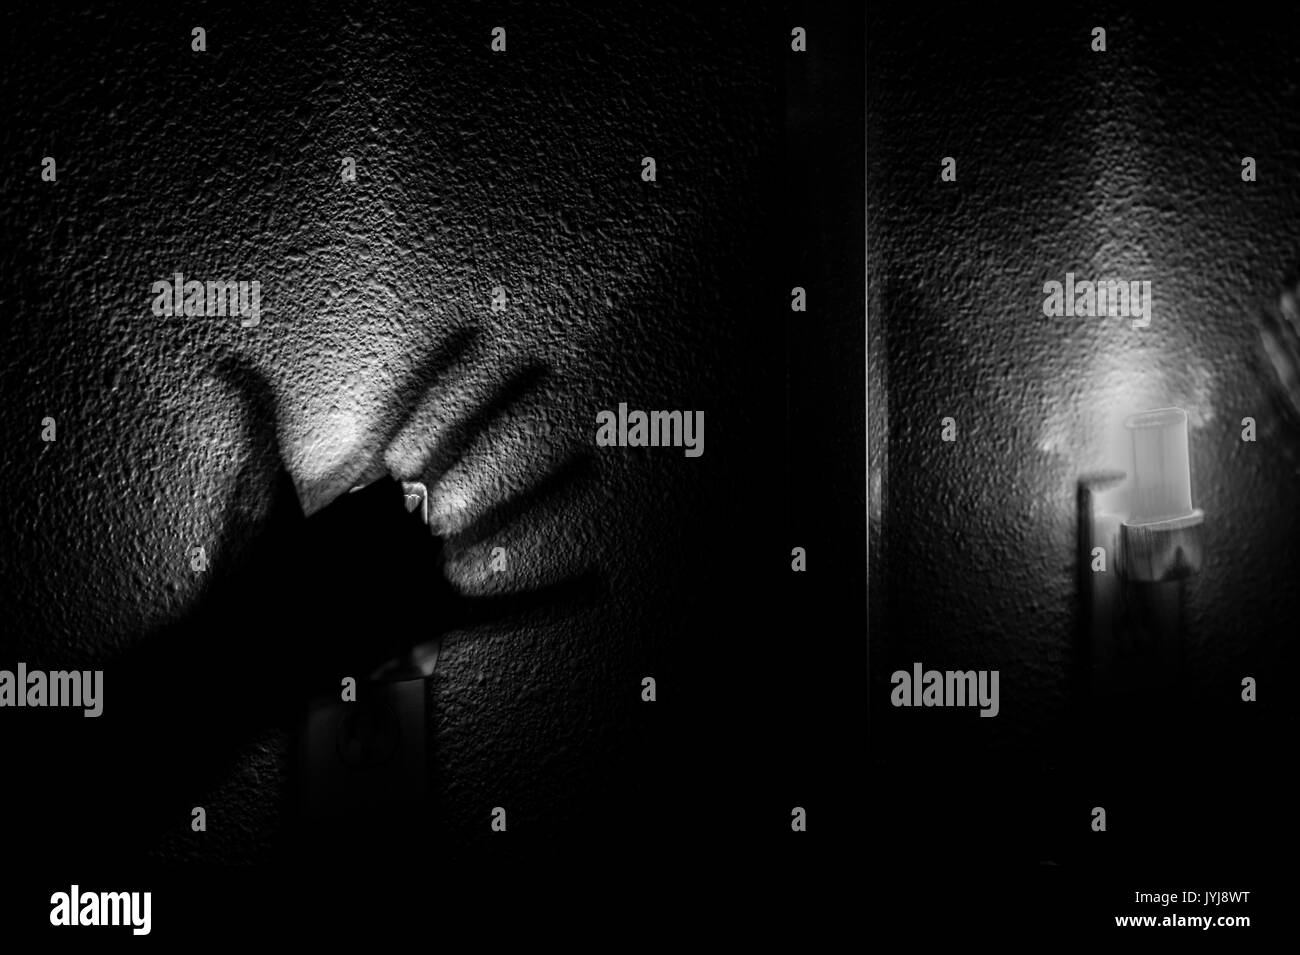 Nachtlicht mit silhouettierter Hand unheimlich und nervenaufreibend, schwarz-weiß-Bild  Stockfotografie - Alamy